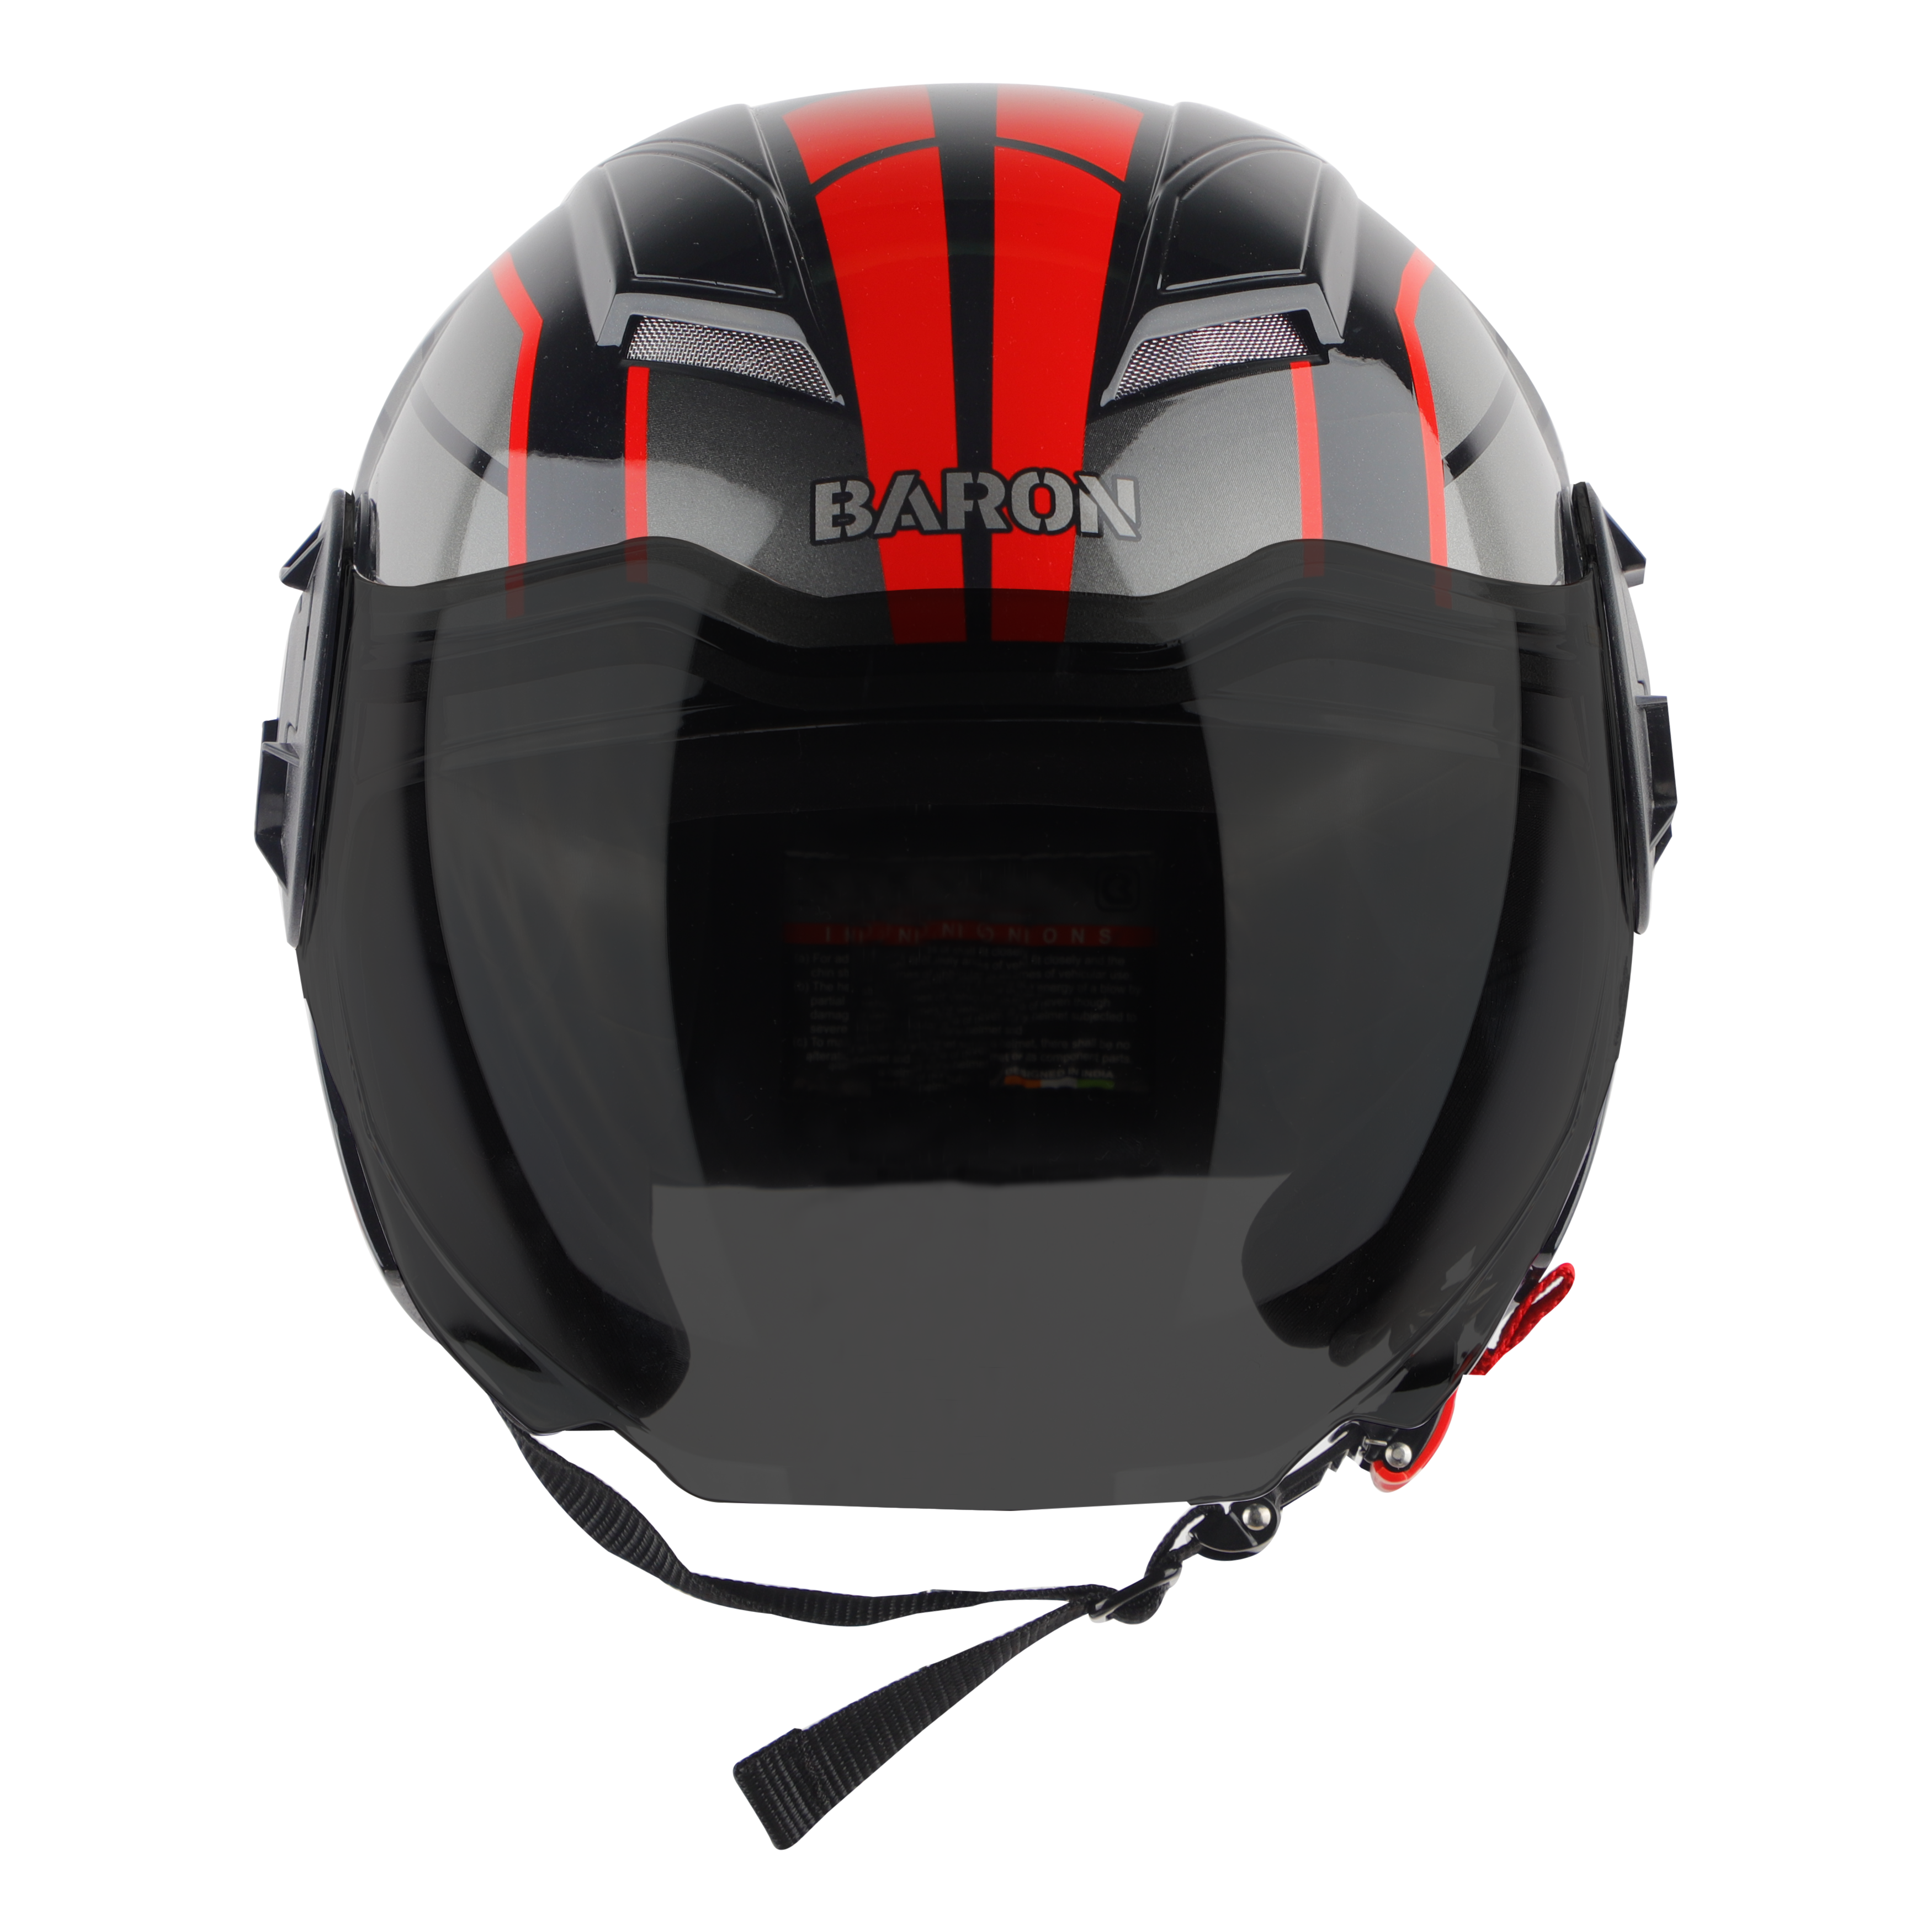 Steelbird SBH-31 Baron ISI Certified Open Face Helmet For Men And Women (Matt Black Red With Smoke Visor)